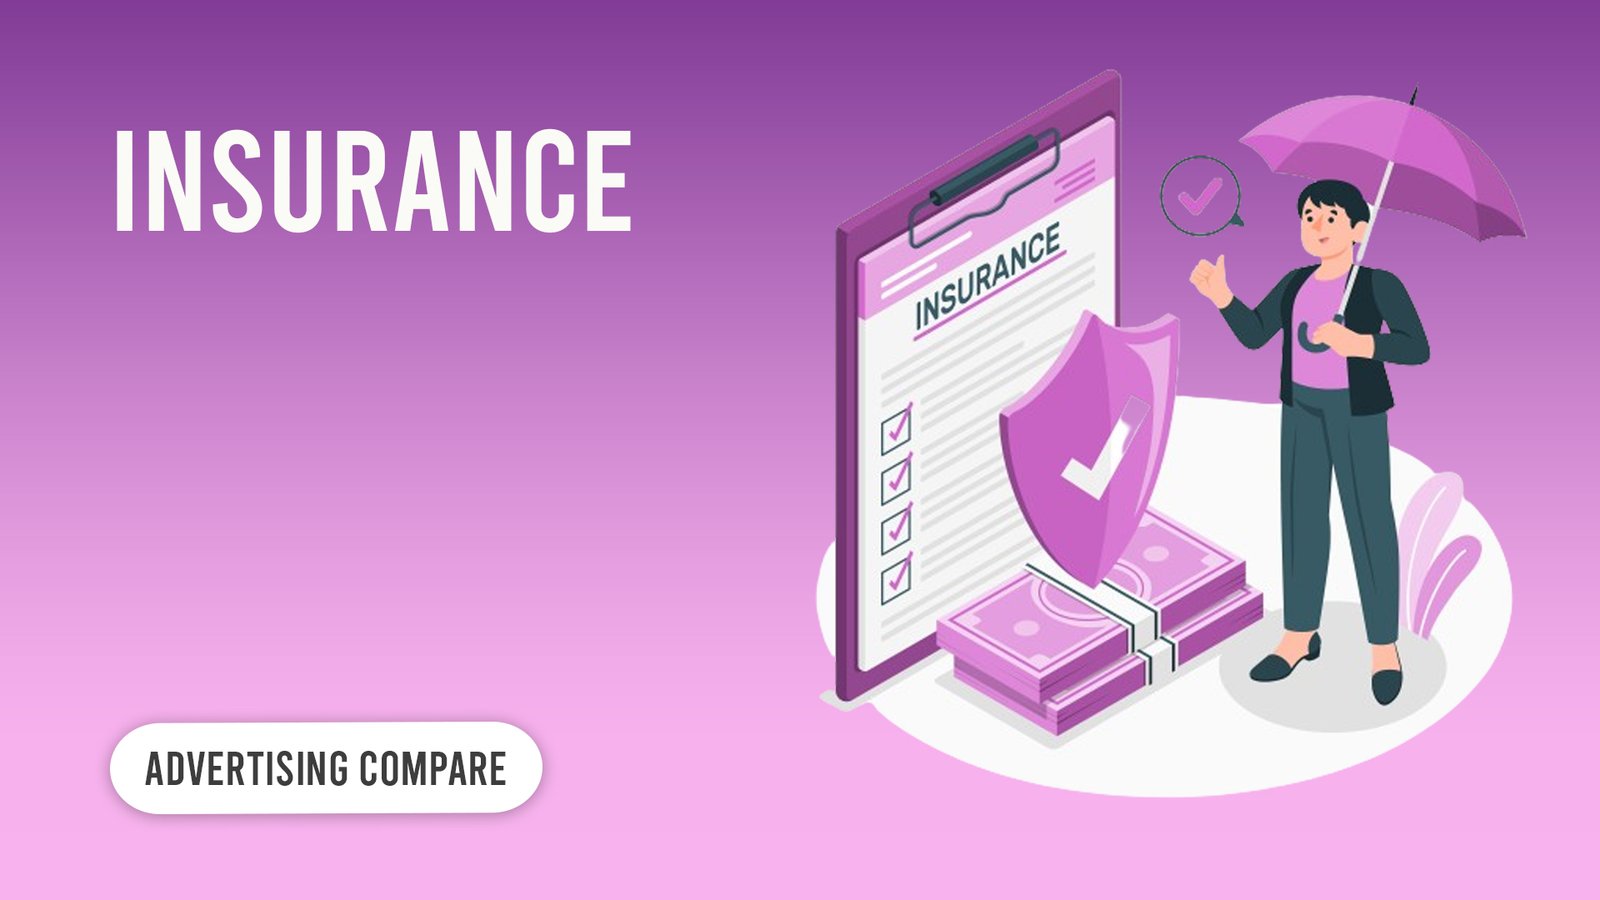 Insurance www.theadcompare.com